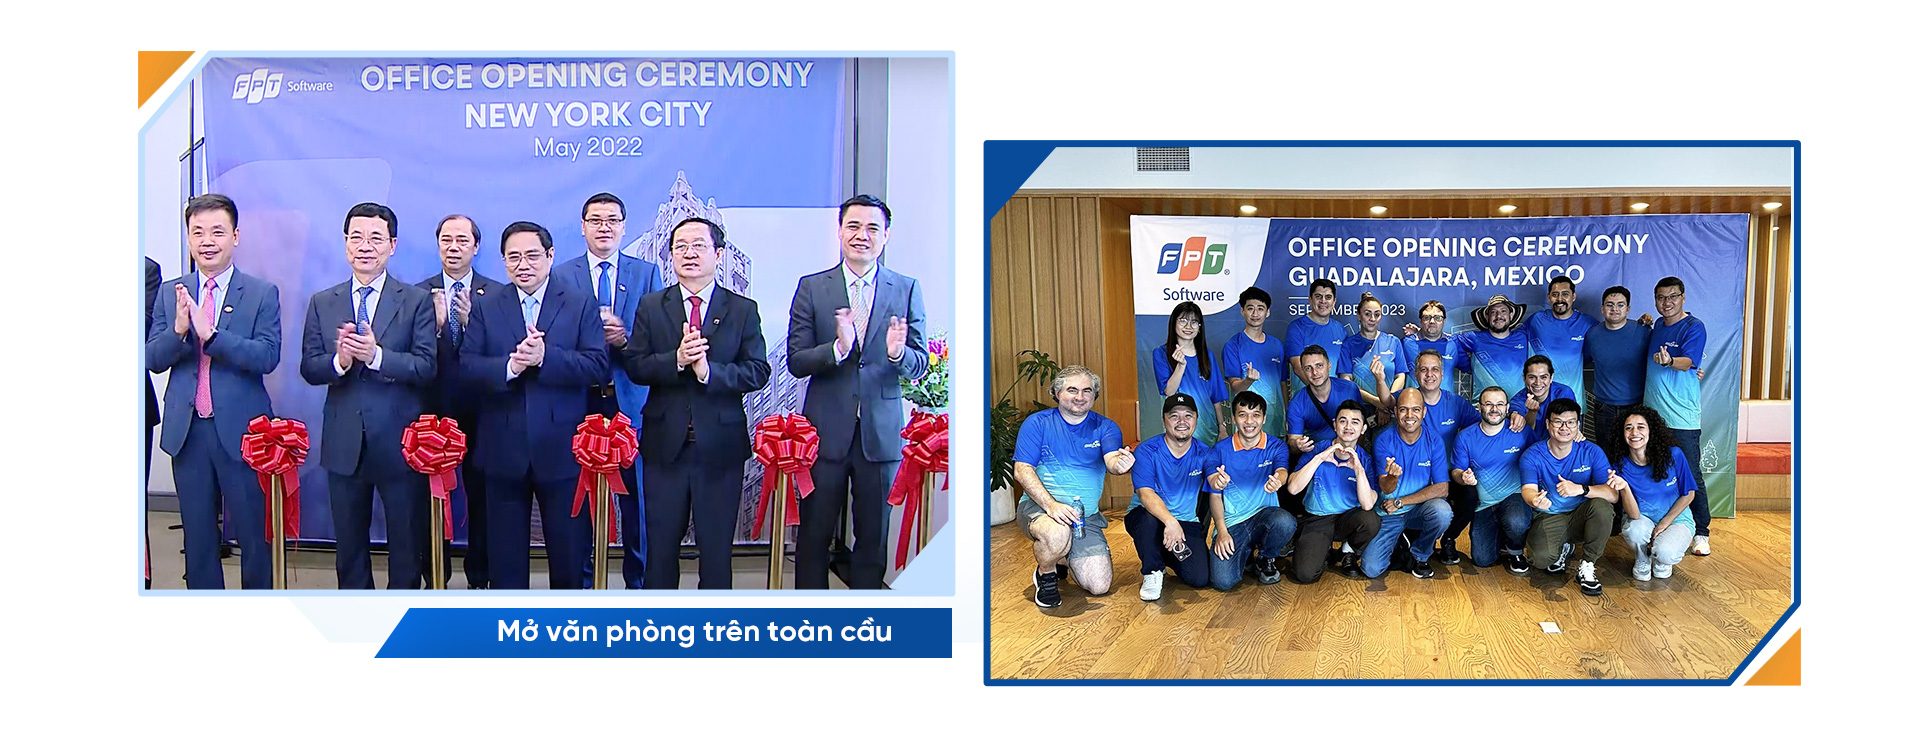 CEO FPT Nguyễn Văn Khoa: Thành công của FPT có rất ít từ sự may mắn - Ảnh 5.